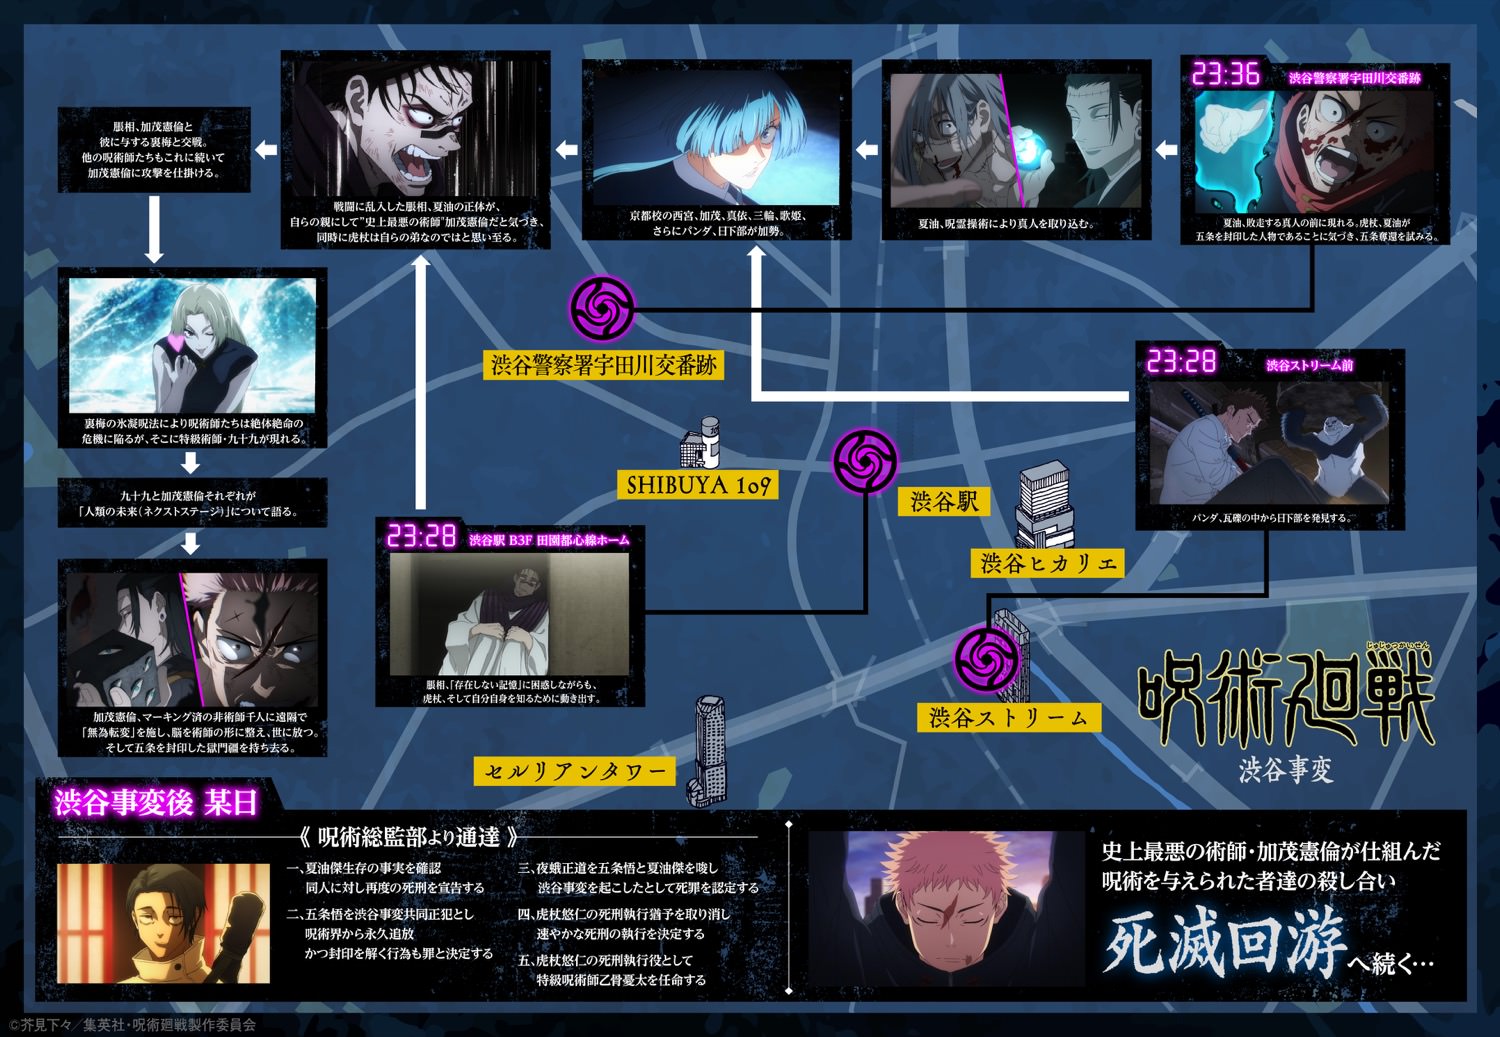 呪術廻戦 第2期 渋谷事変の出来事を時系列でまとめたマップ最終更新!